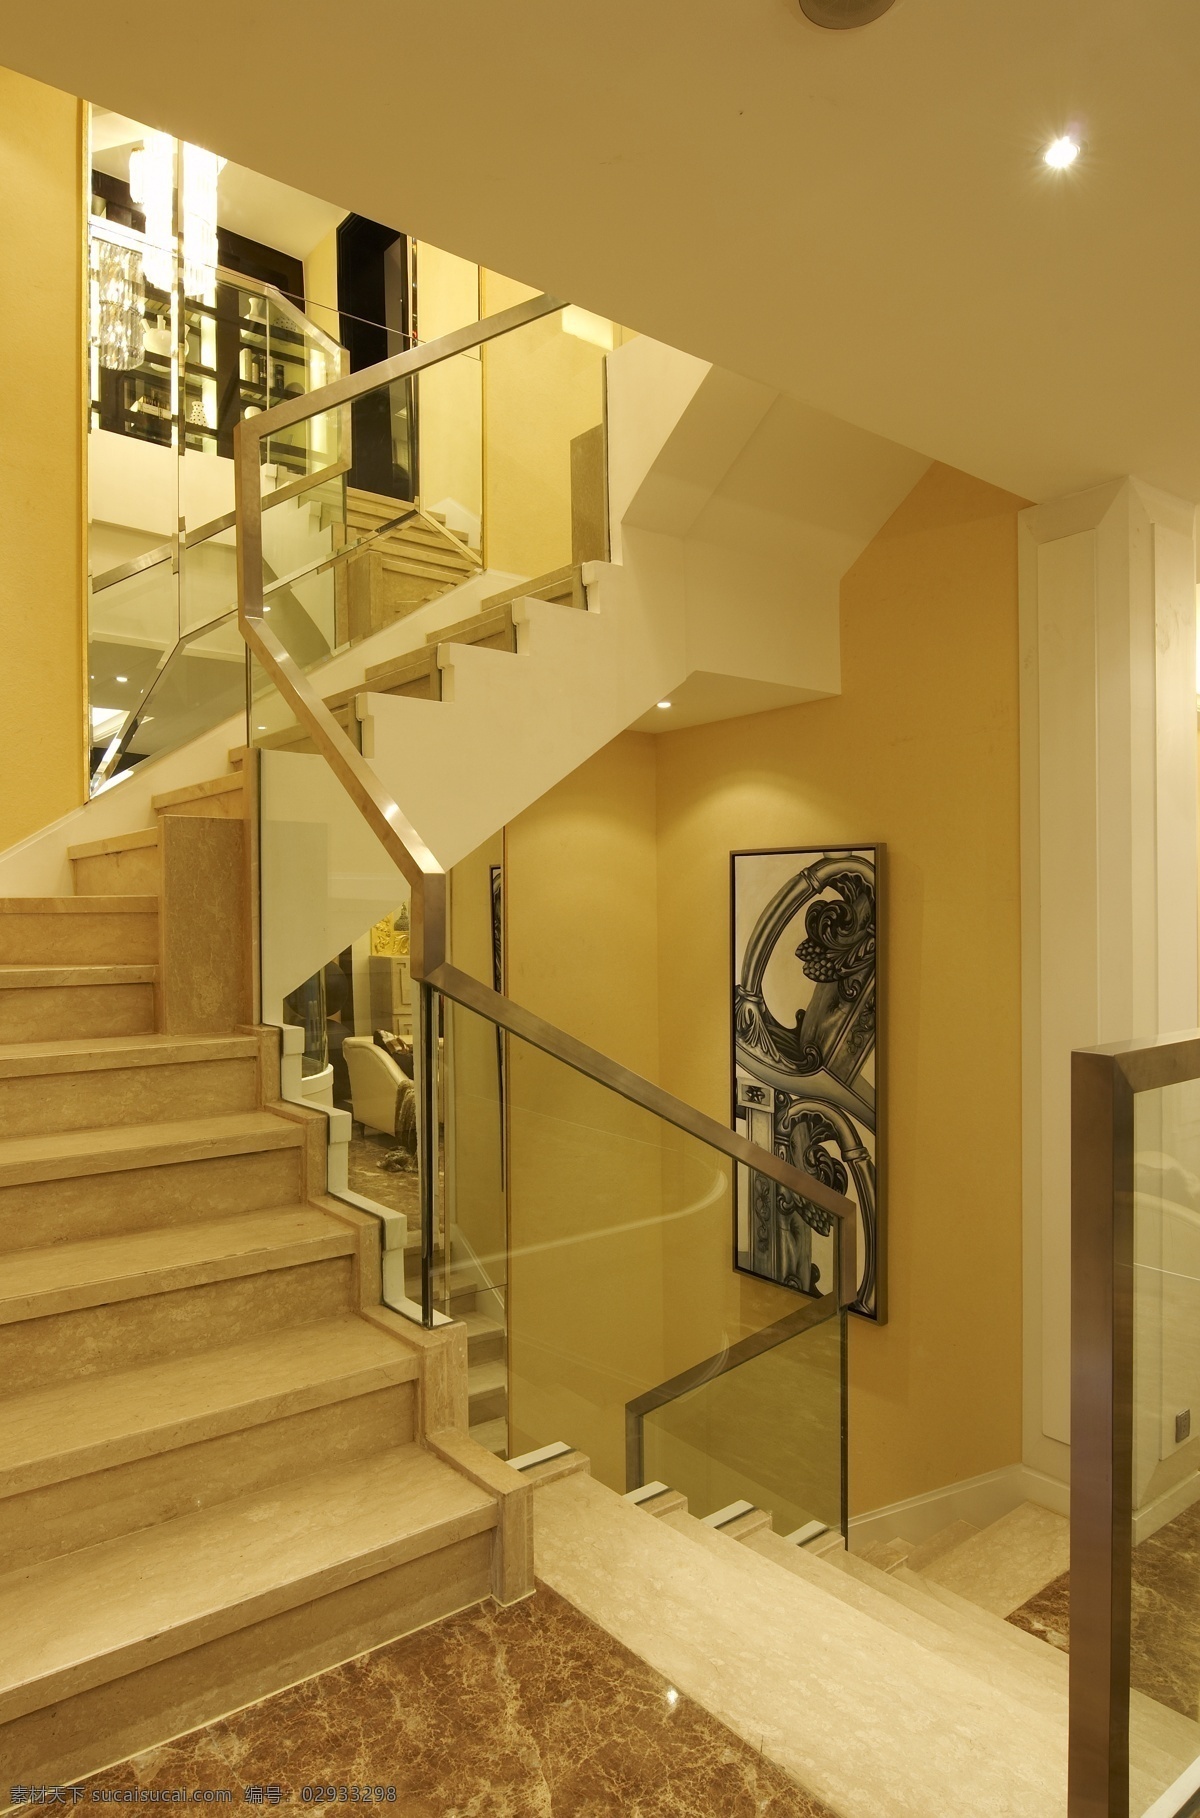 别墅 室内 楼梯 装修 效果图 铁艺栏杆 大理石台阶 清新园艺 大空间 暖色调